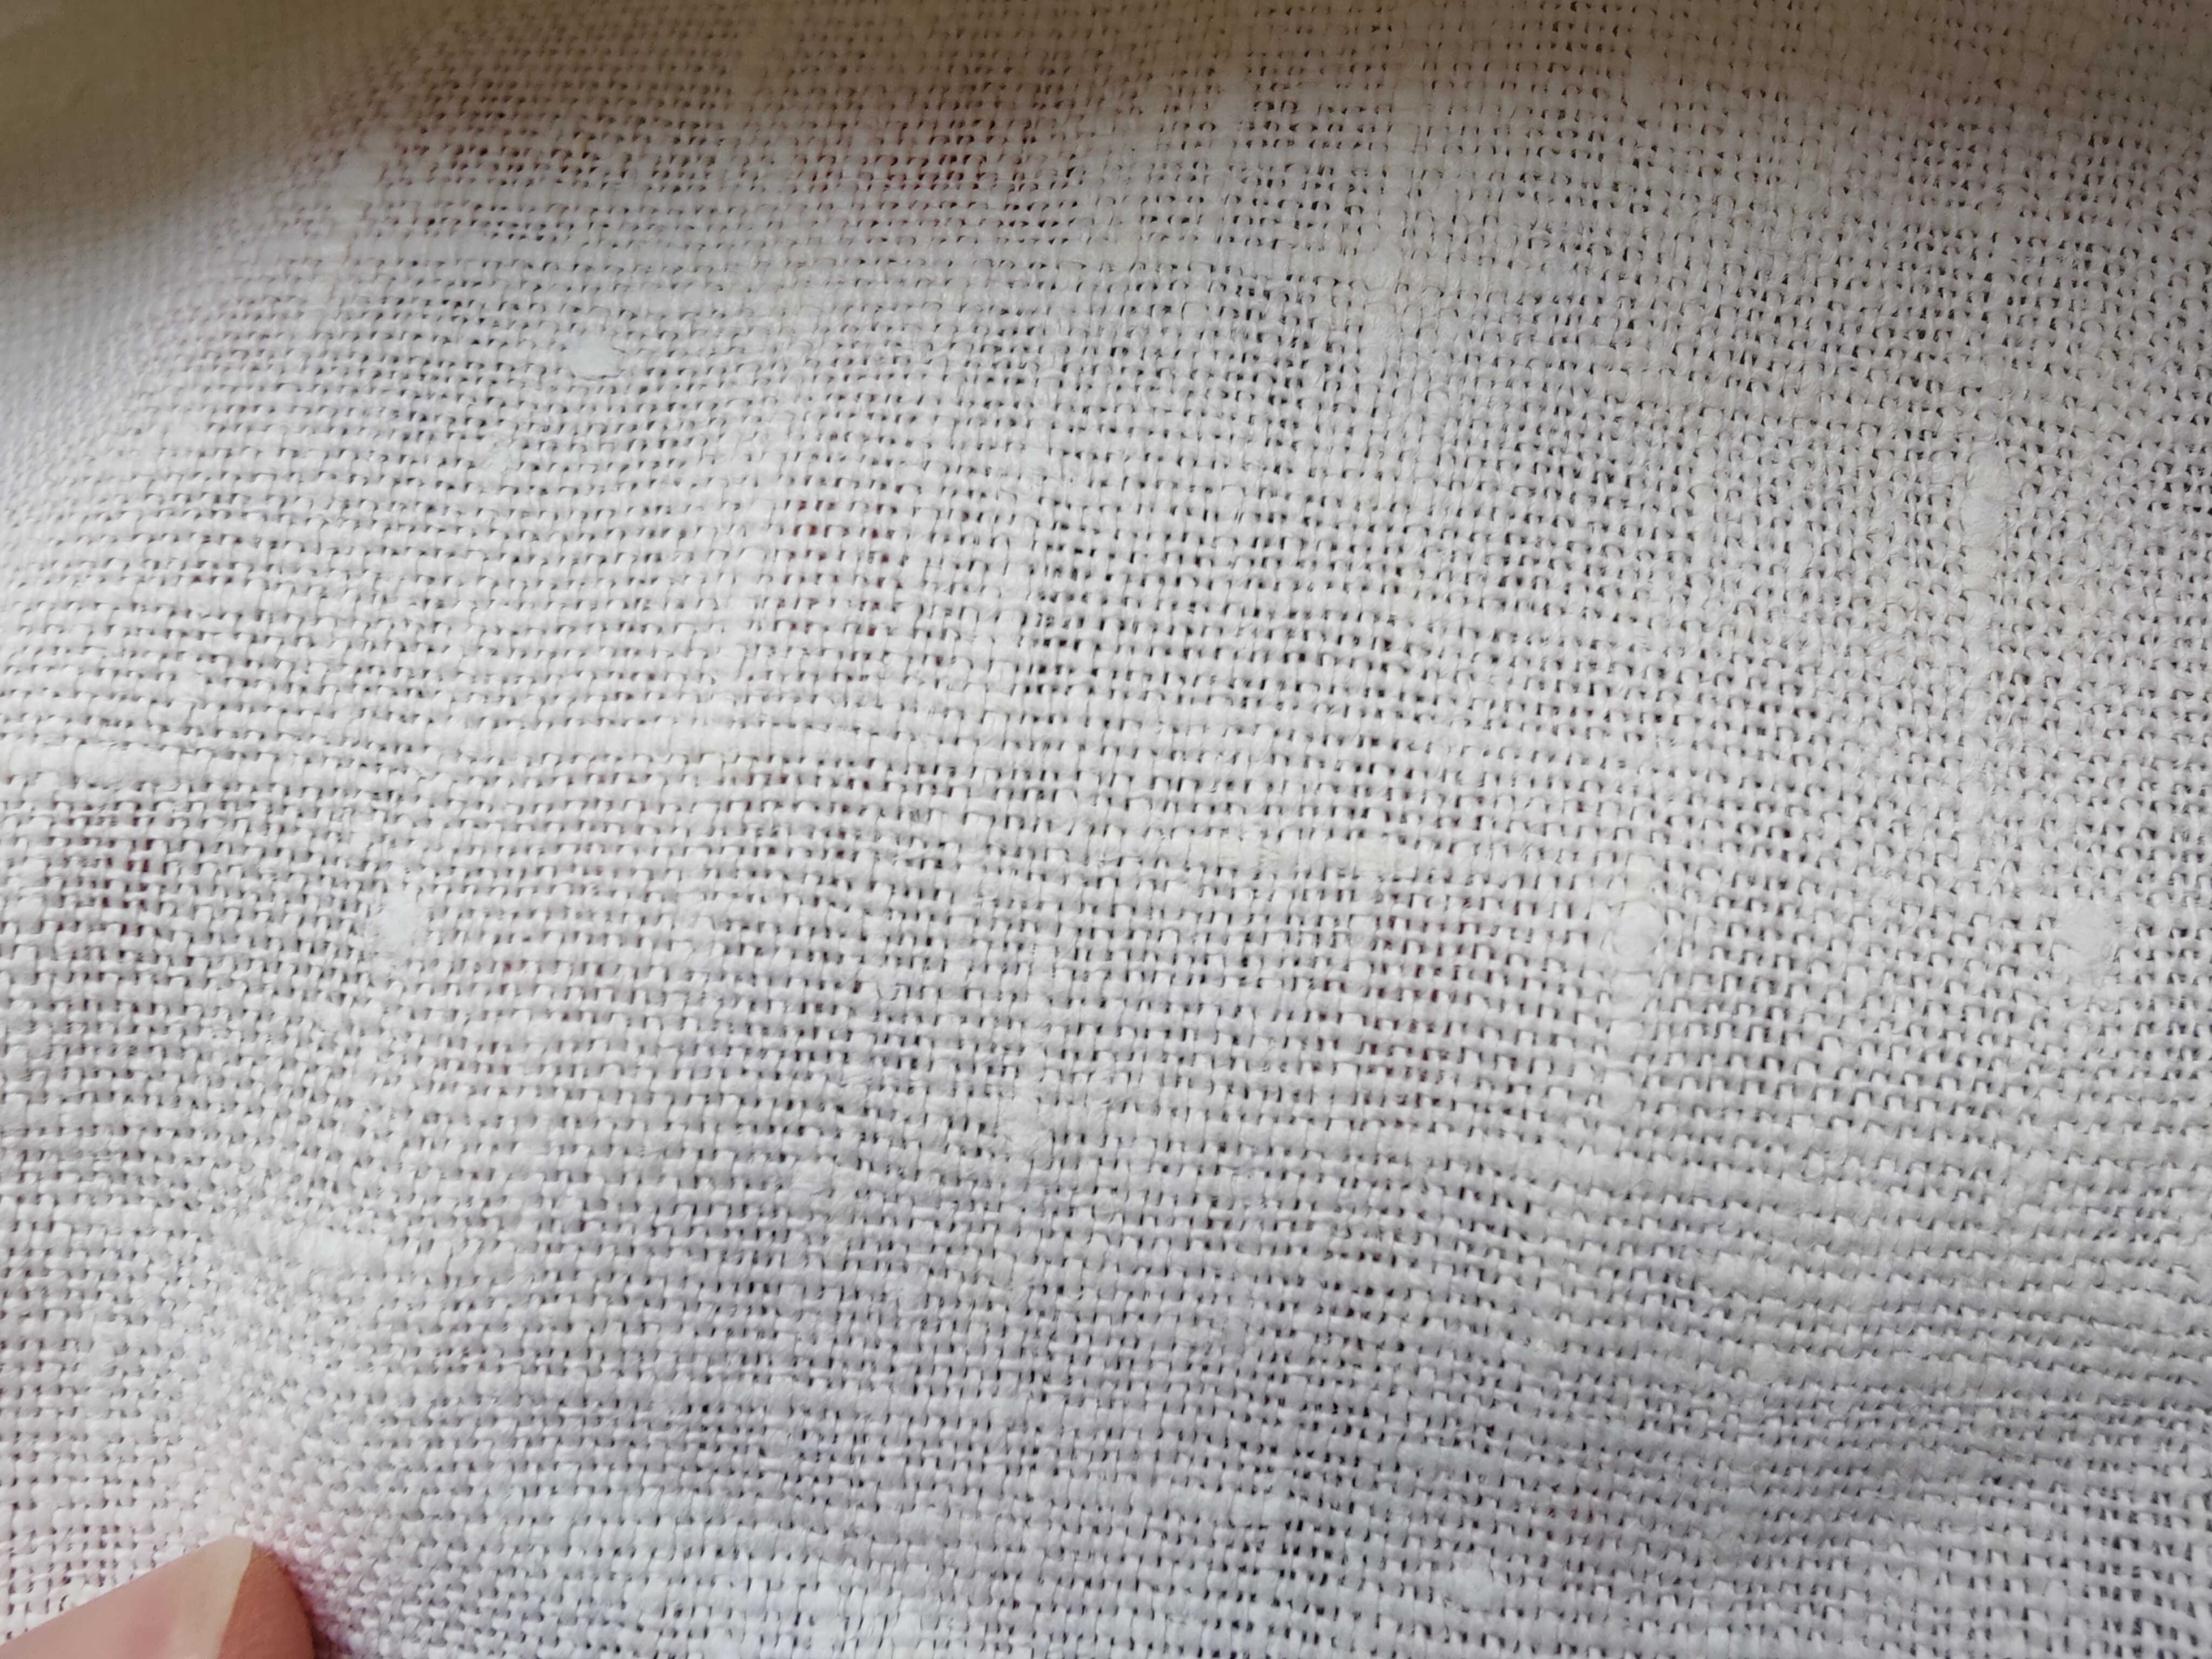 Біла тканина з квітами, для блузок, хусток, цупка тканина